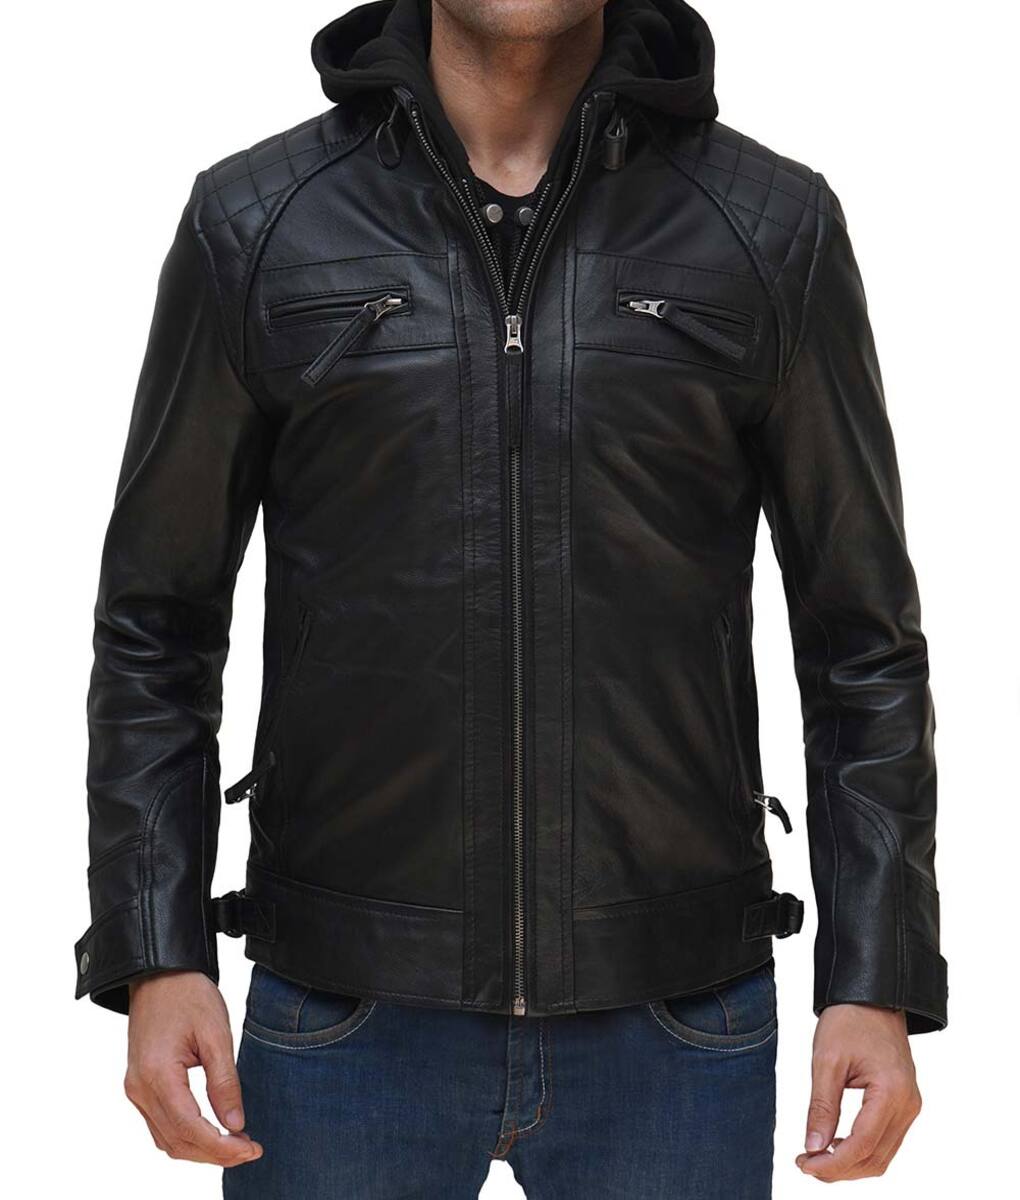 Black_hooded_leather_jacket_for_men